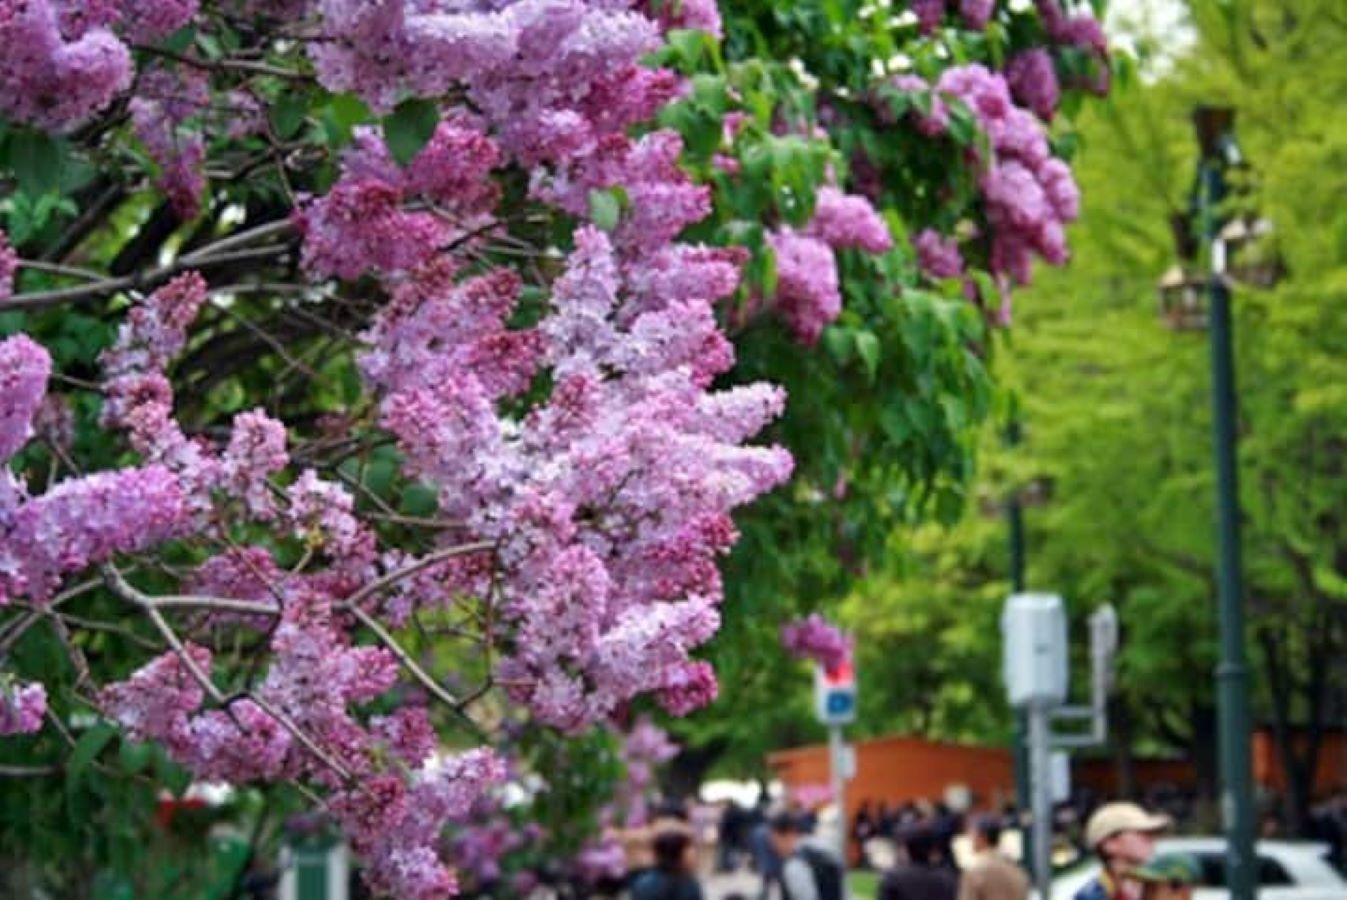 Sapporo lilac Festival